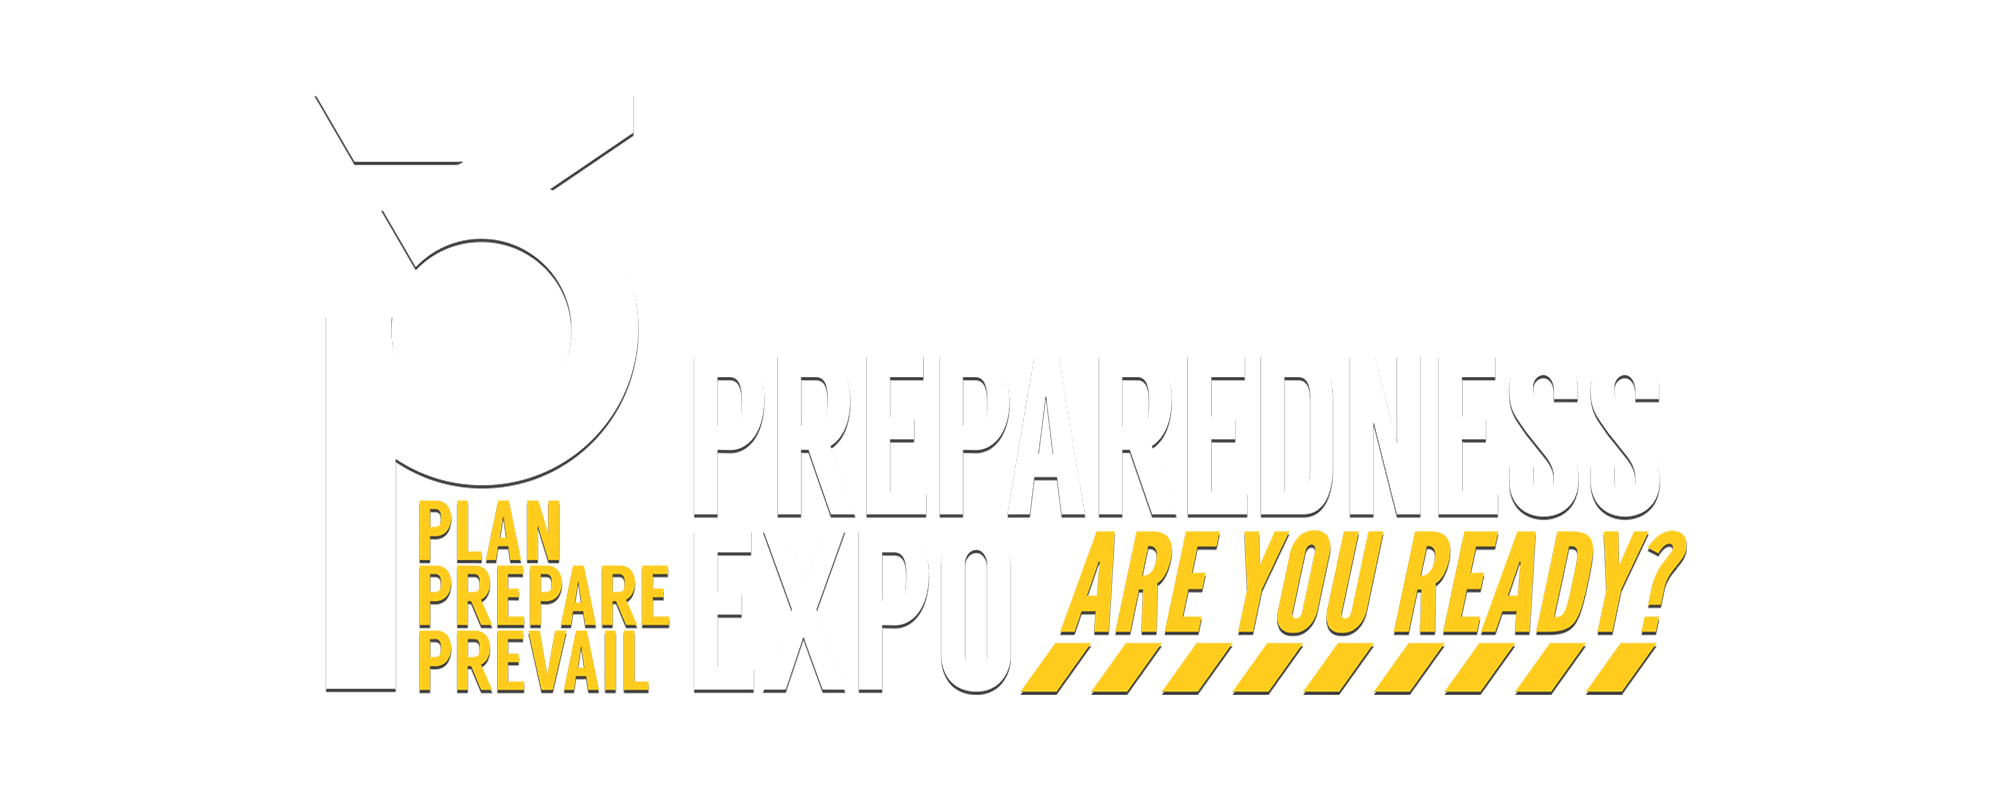 3P Preparedness Expo - Plan Prepare Prevail